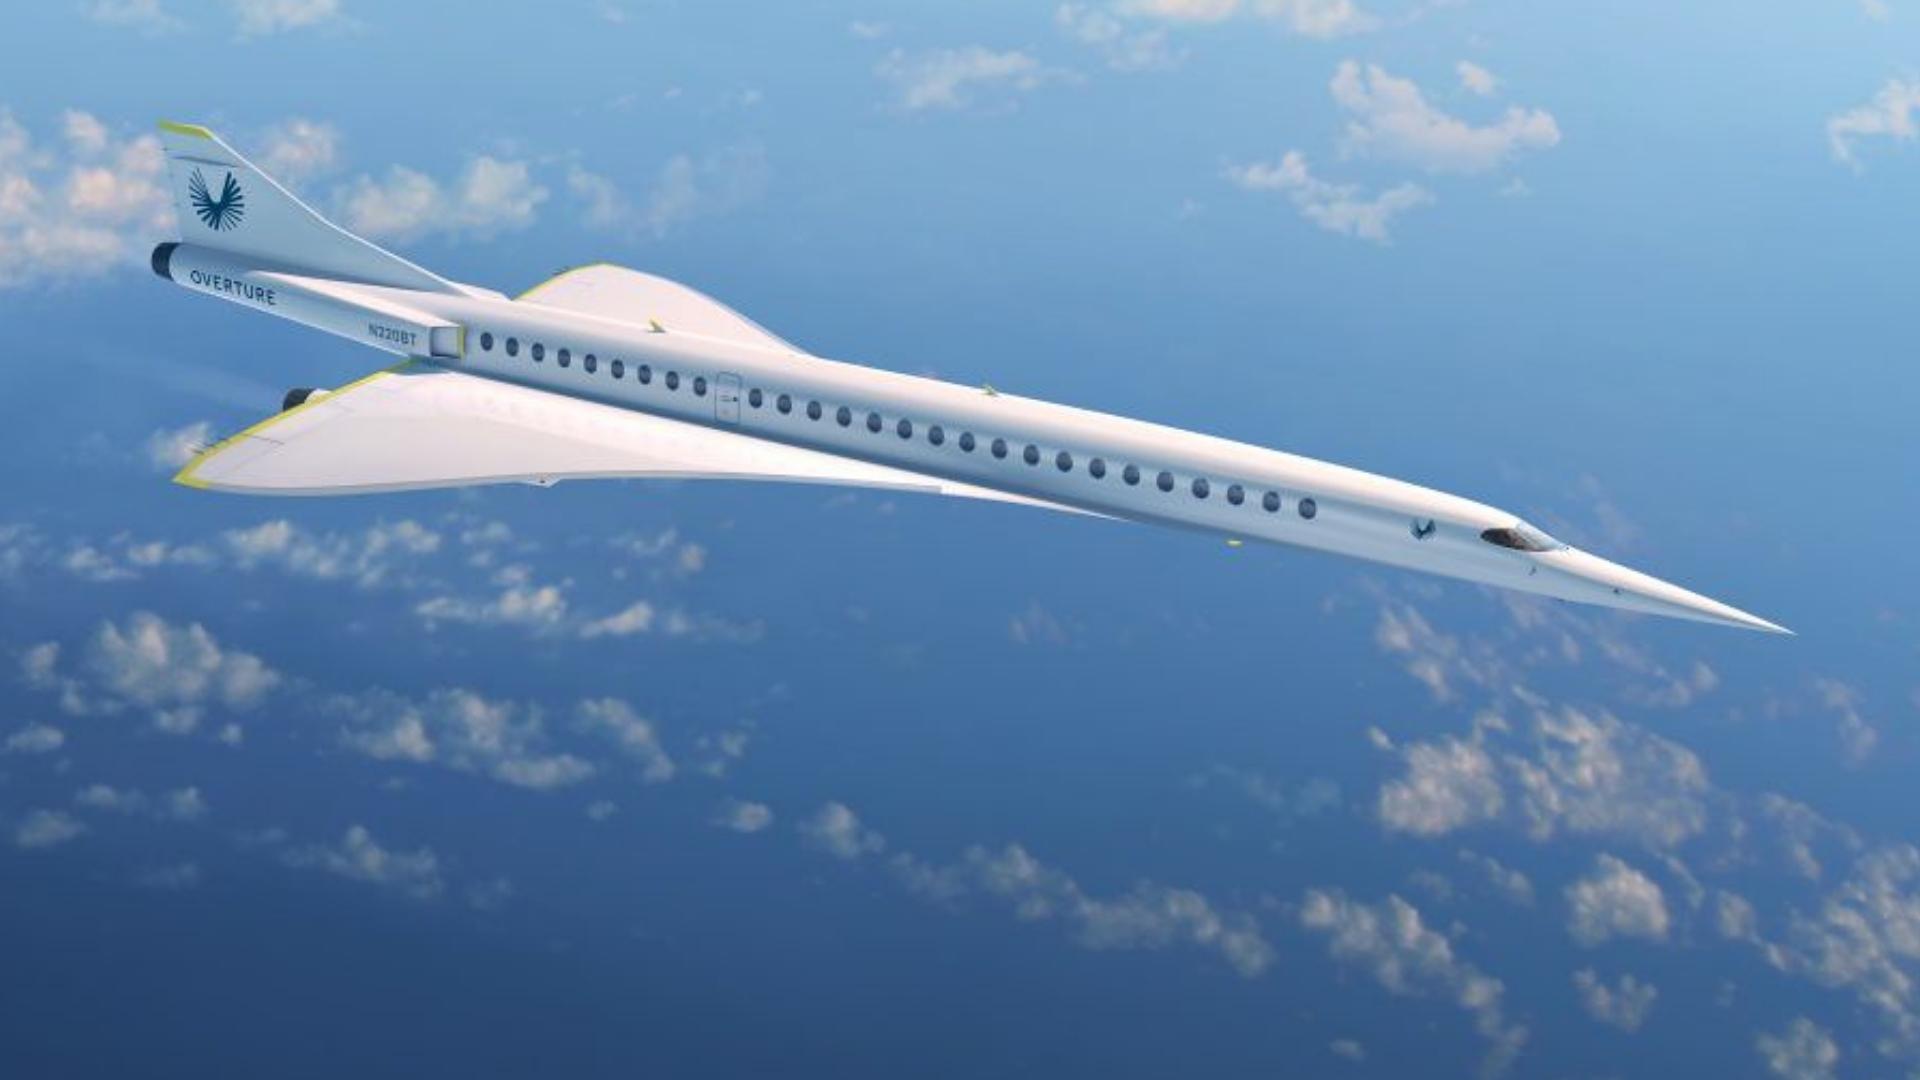 American Airlines tendrá la mayor flotilla de aviones supersónicos tras acuerdo con Boom Supersonic